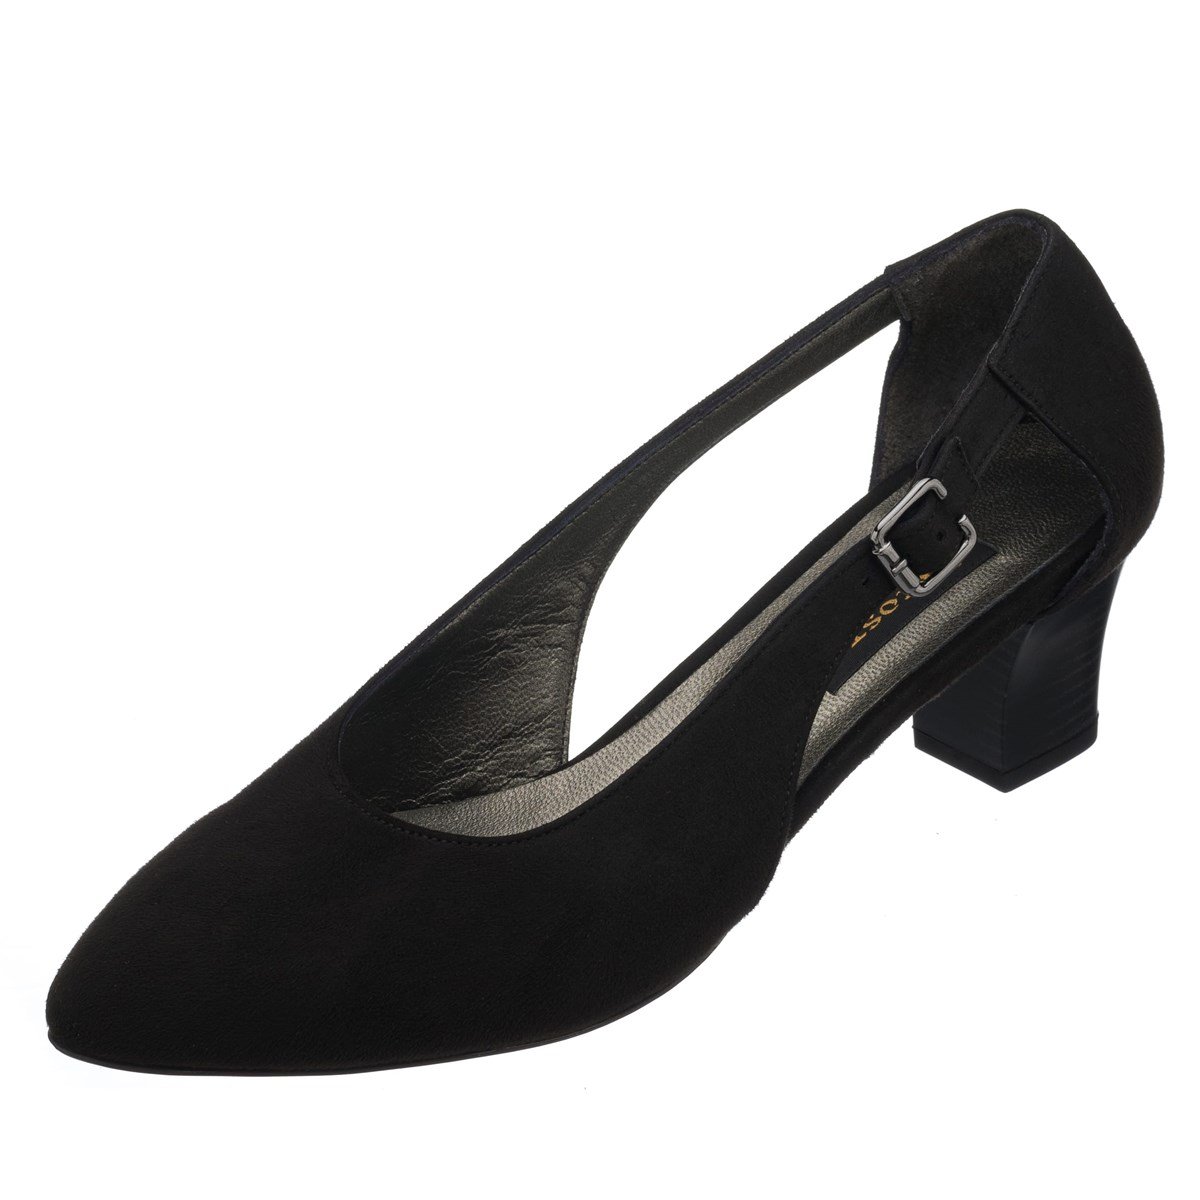 LTF00121 Siyah Süet Kısa Topuk rahat geniş kalıp özel seri büyük numara topuklu  ayakkabı